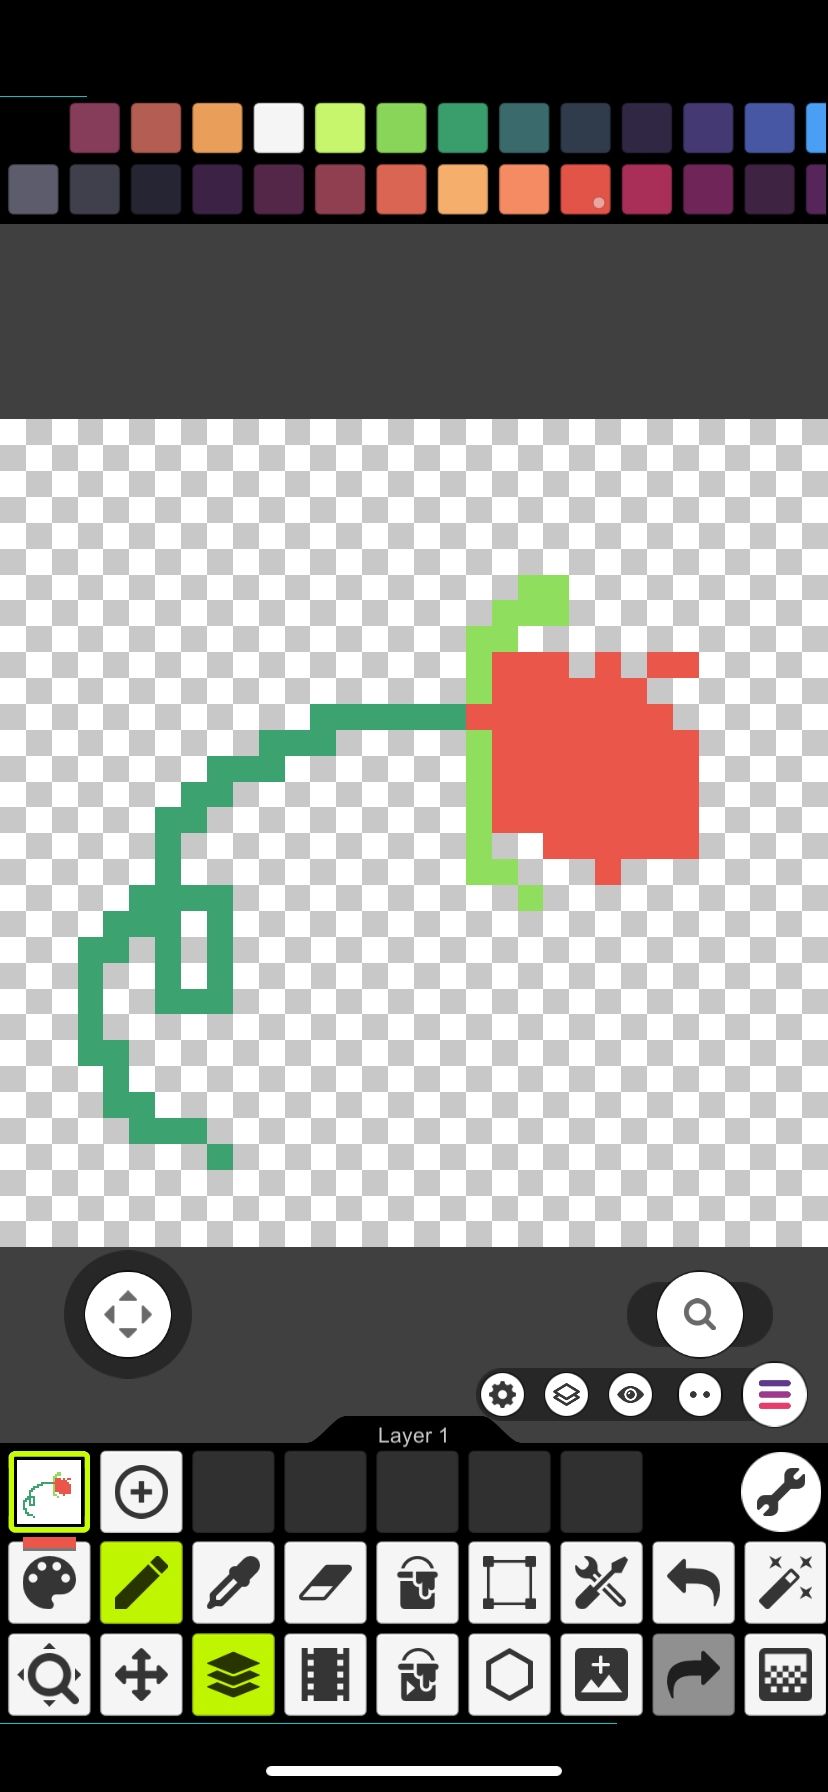 Pixel art created in Pixel Studio app